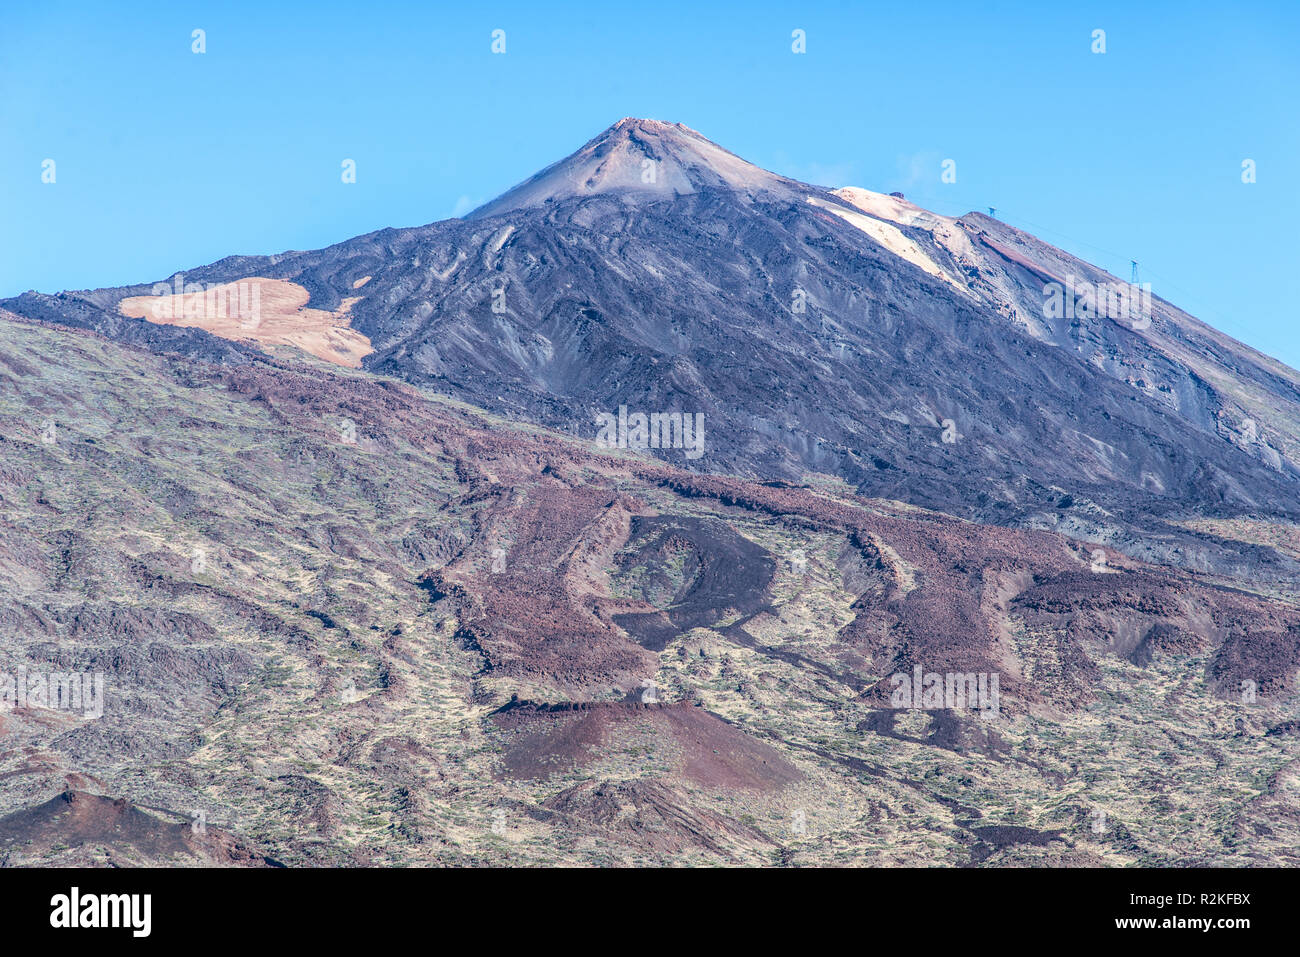 La cumbre del Teide, en Tenerife. Foto de stock